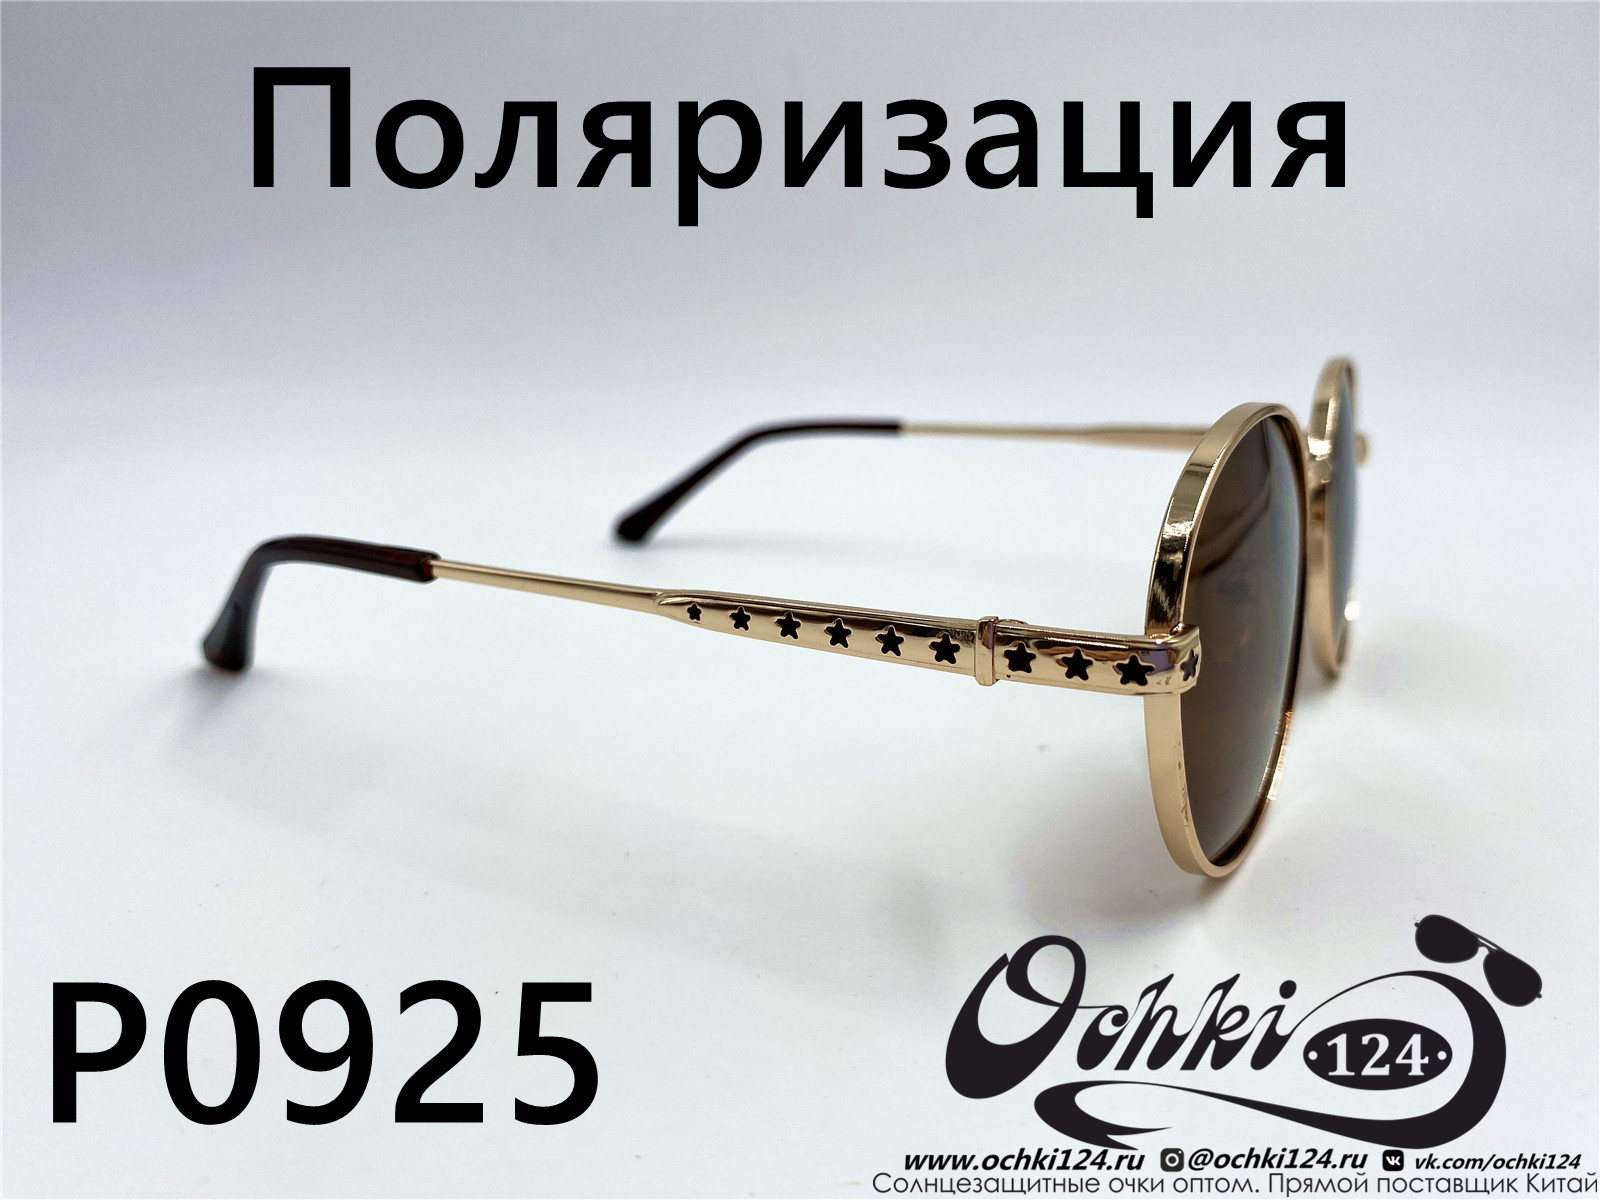  Солнцезащитные очки картинка 2022 Женские Поляризованные Круглые  P0925-2 